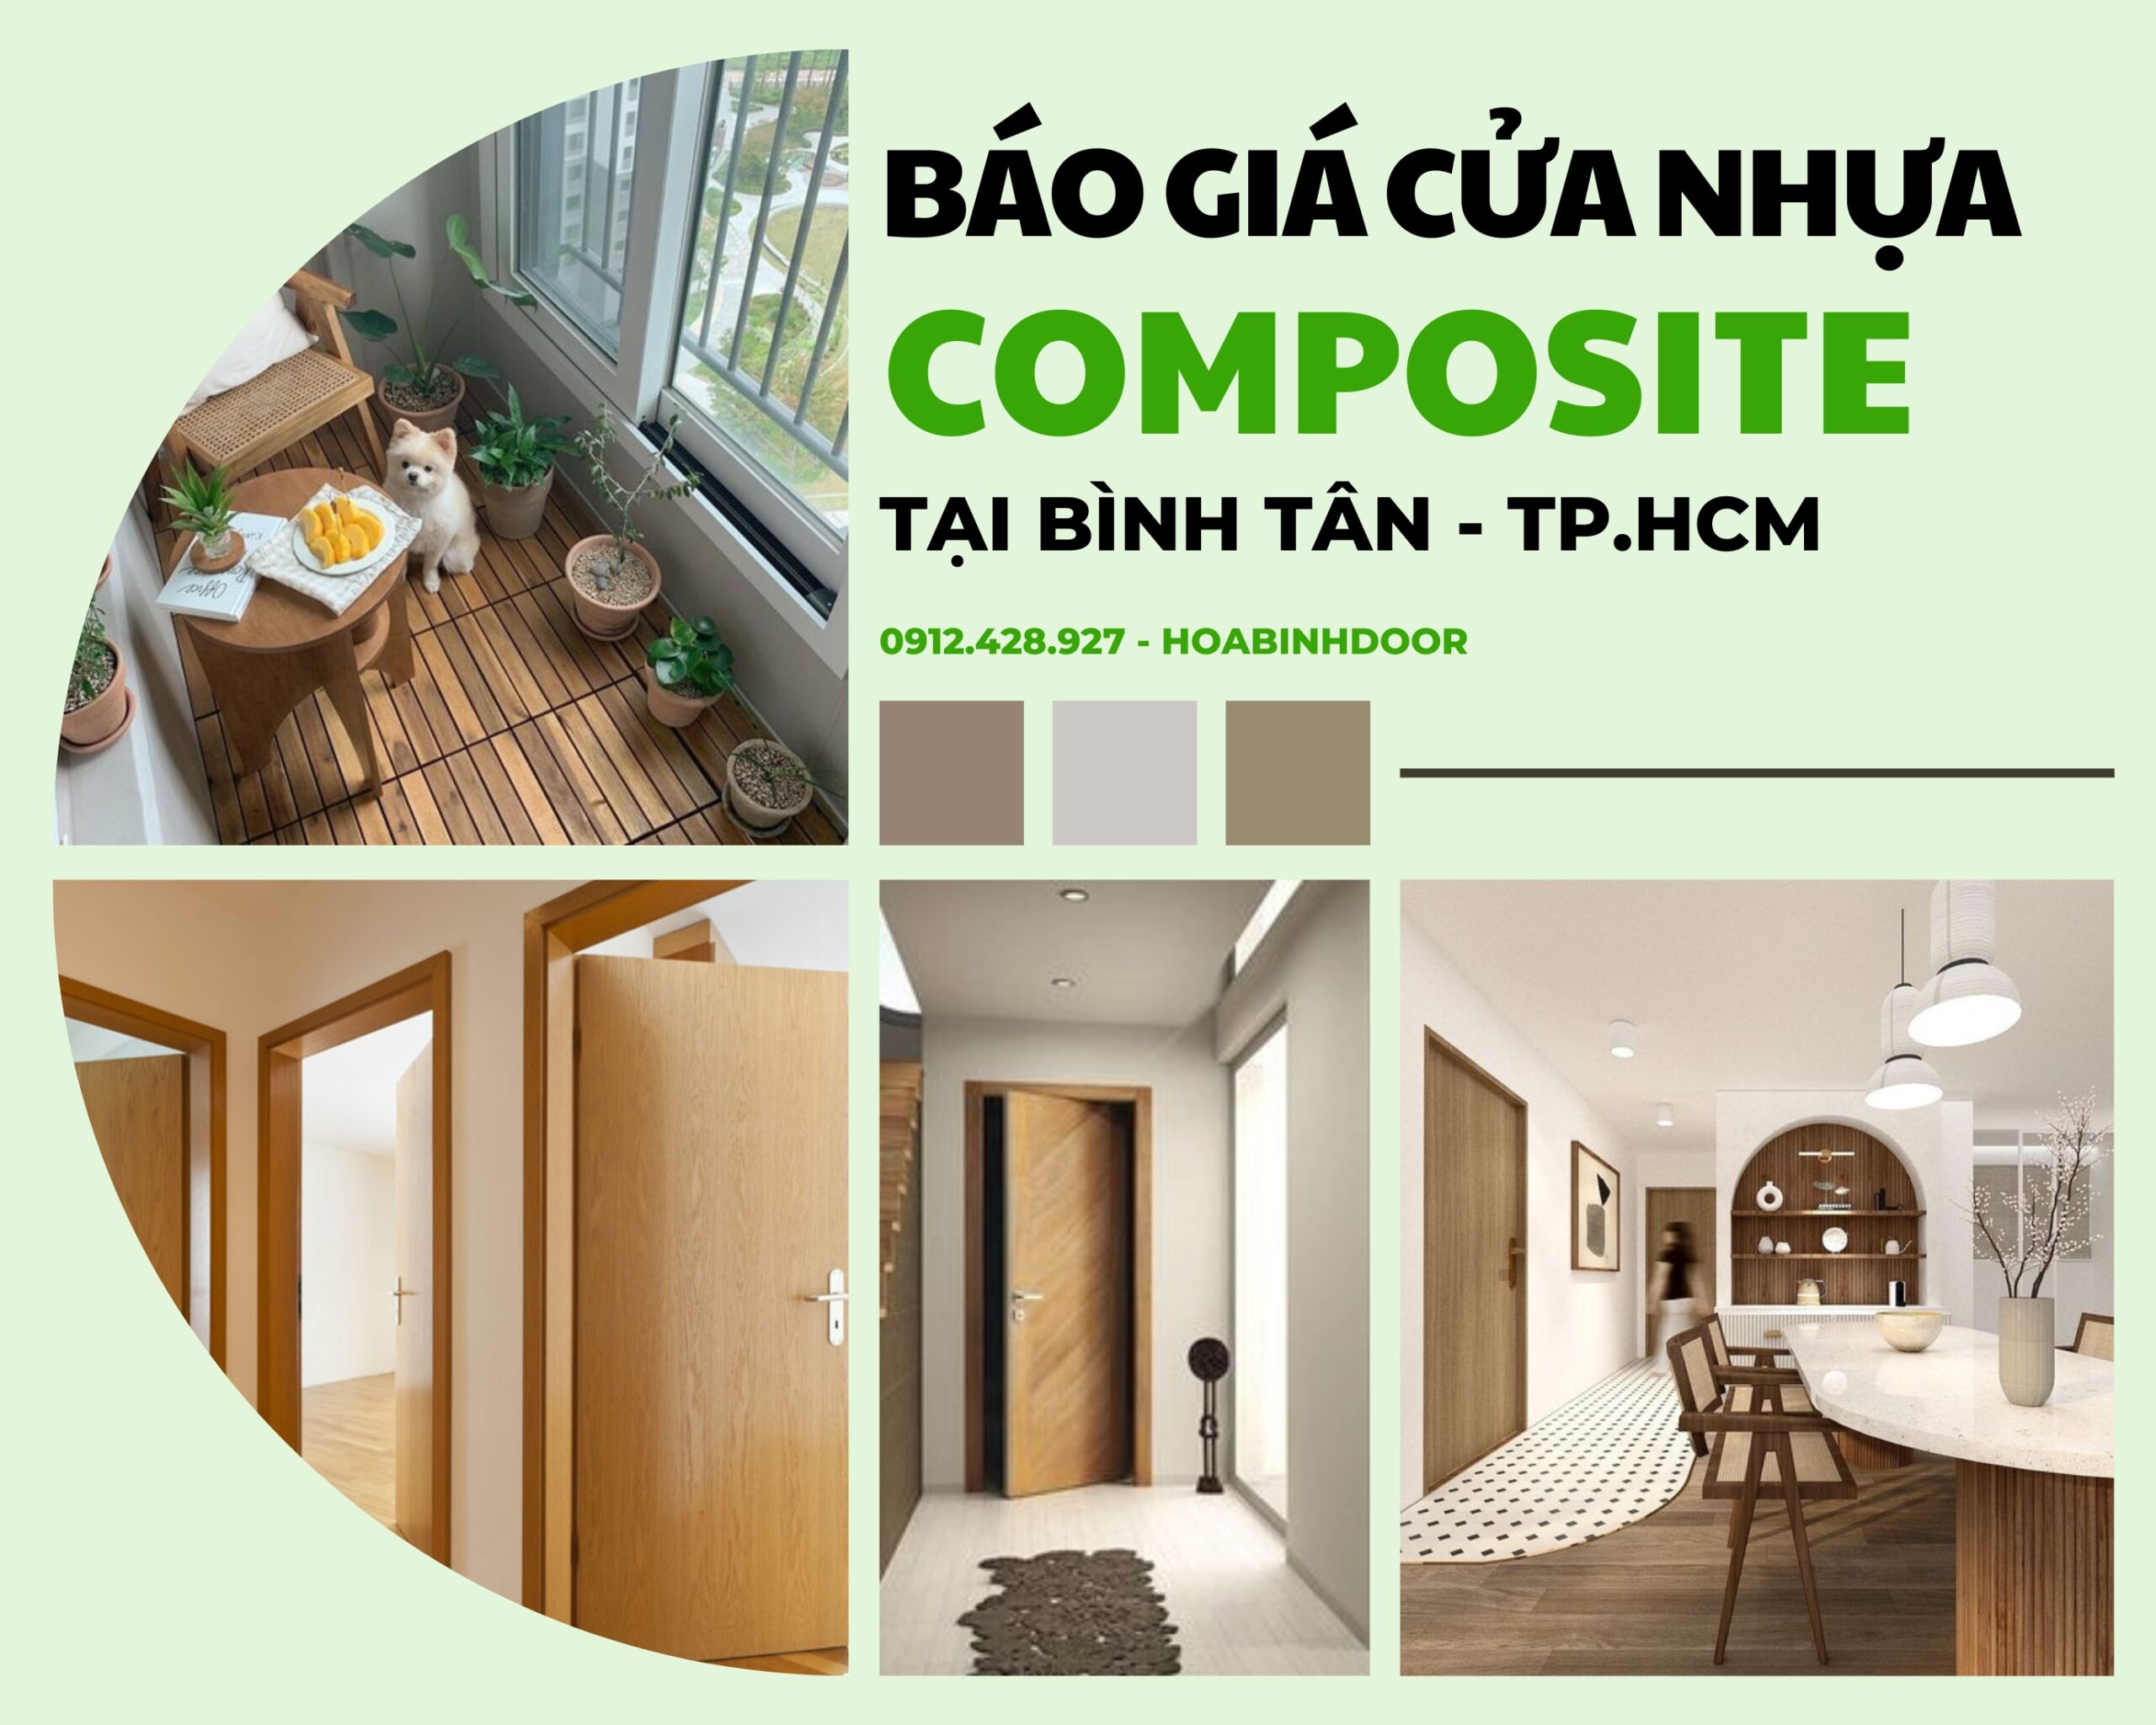 Cửa nhựa Composite tại Bình Tân | Cửa nhựa giả gỗ giá rẻ